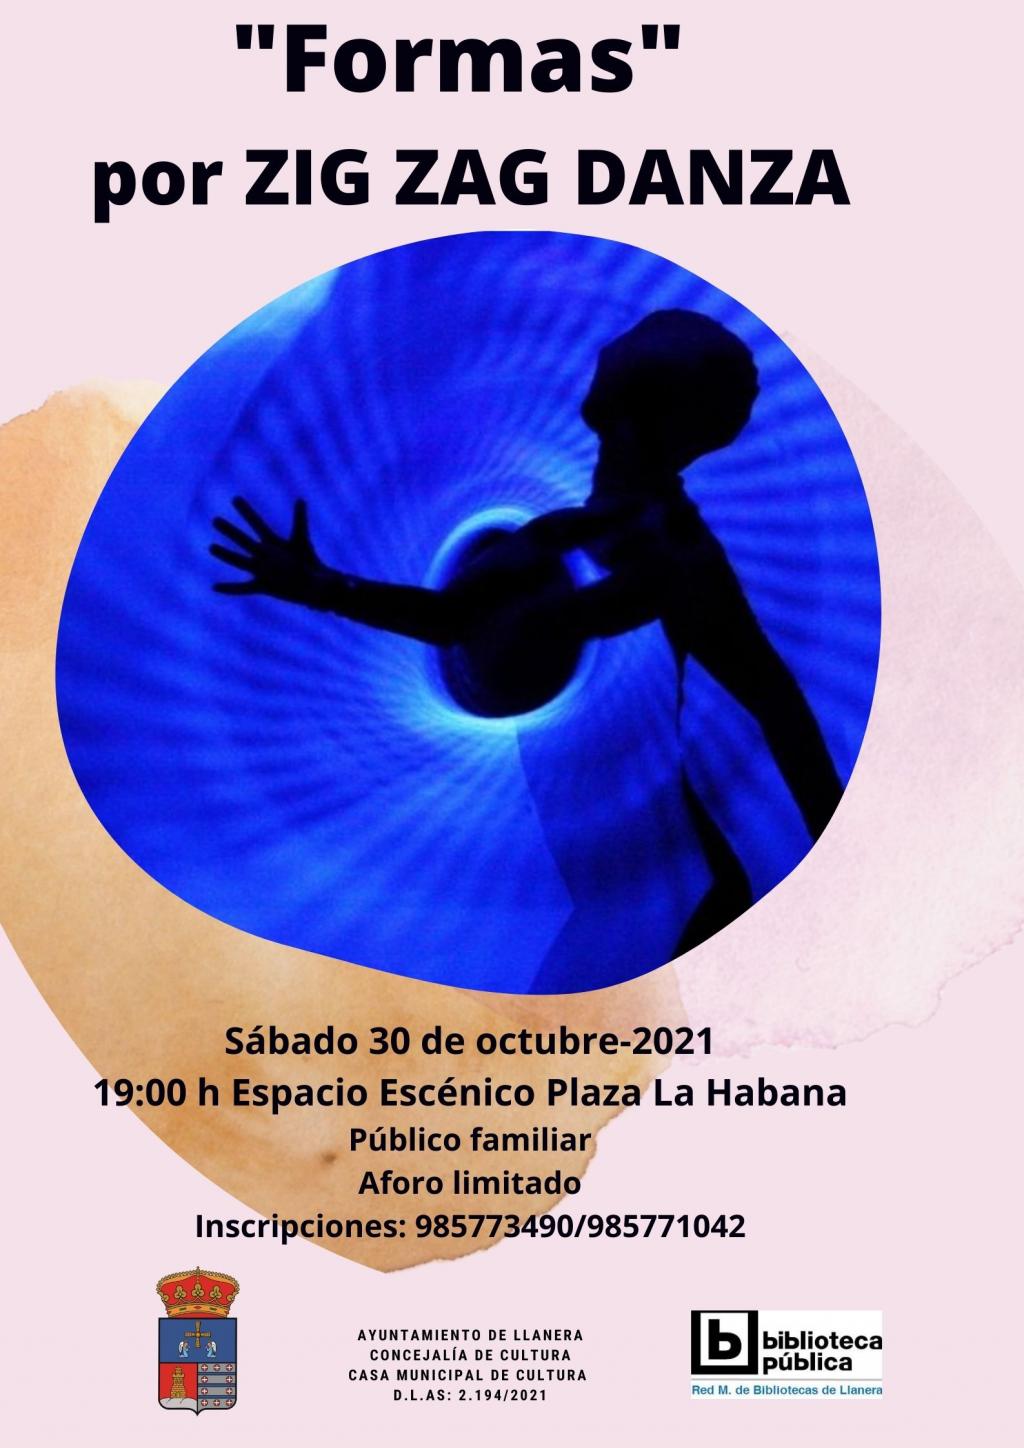 El Tapin - Los sábados 23 y 30 de octubre, el Espacio Escénico Plaza La Habana acoge dos representaciones